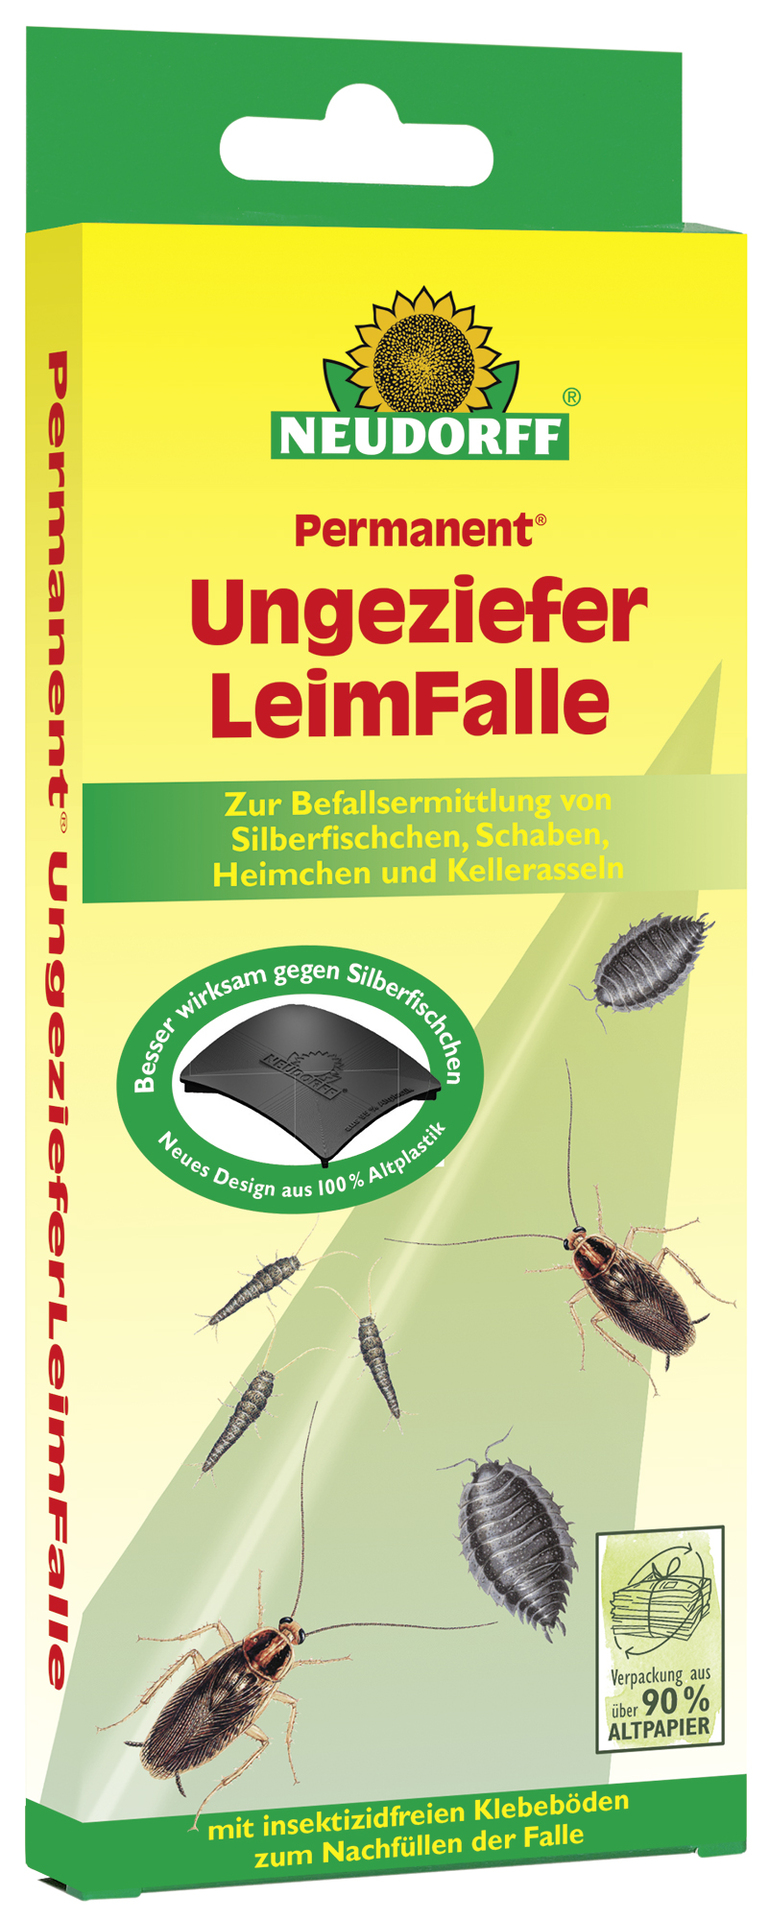 W. Neudorff GmbH KG Permanent UngezieferLeimFalle